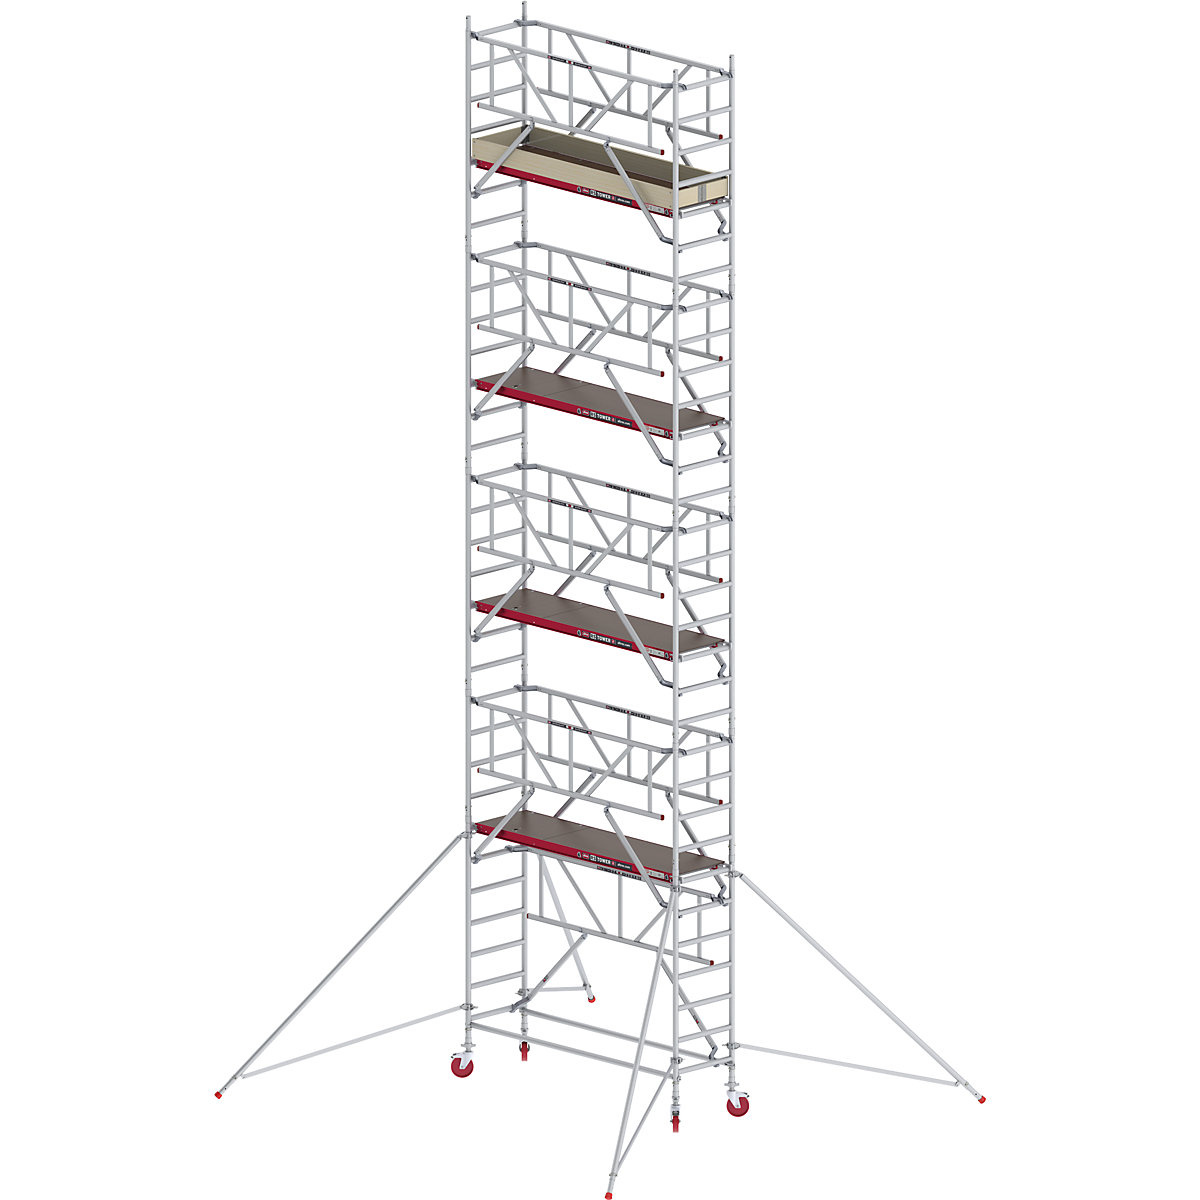 Schelă mobilă RS TOWER 41 îngustă cu Safe-Quick® – Altrex, platformă din lemn, lungime 1,85 m, înălțime de lucru 10,20 m-2